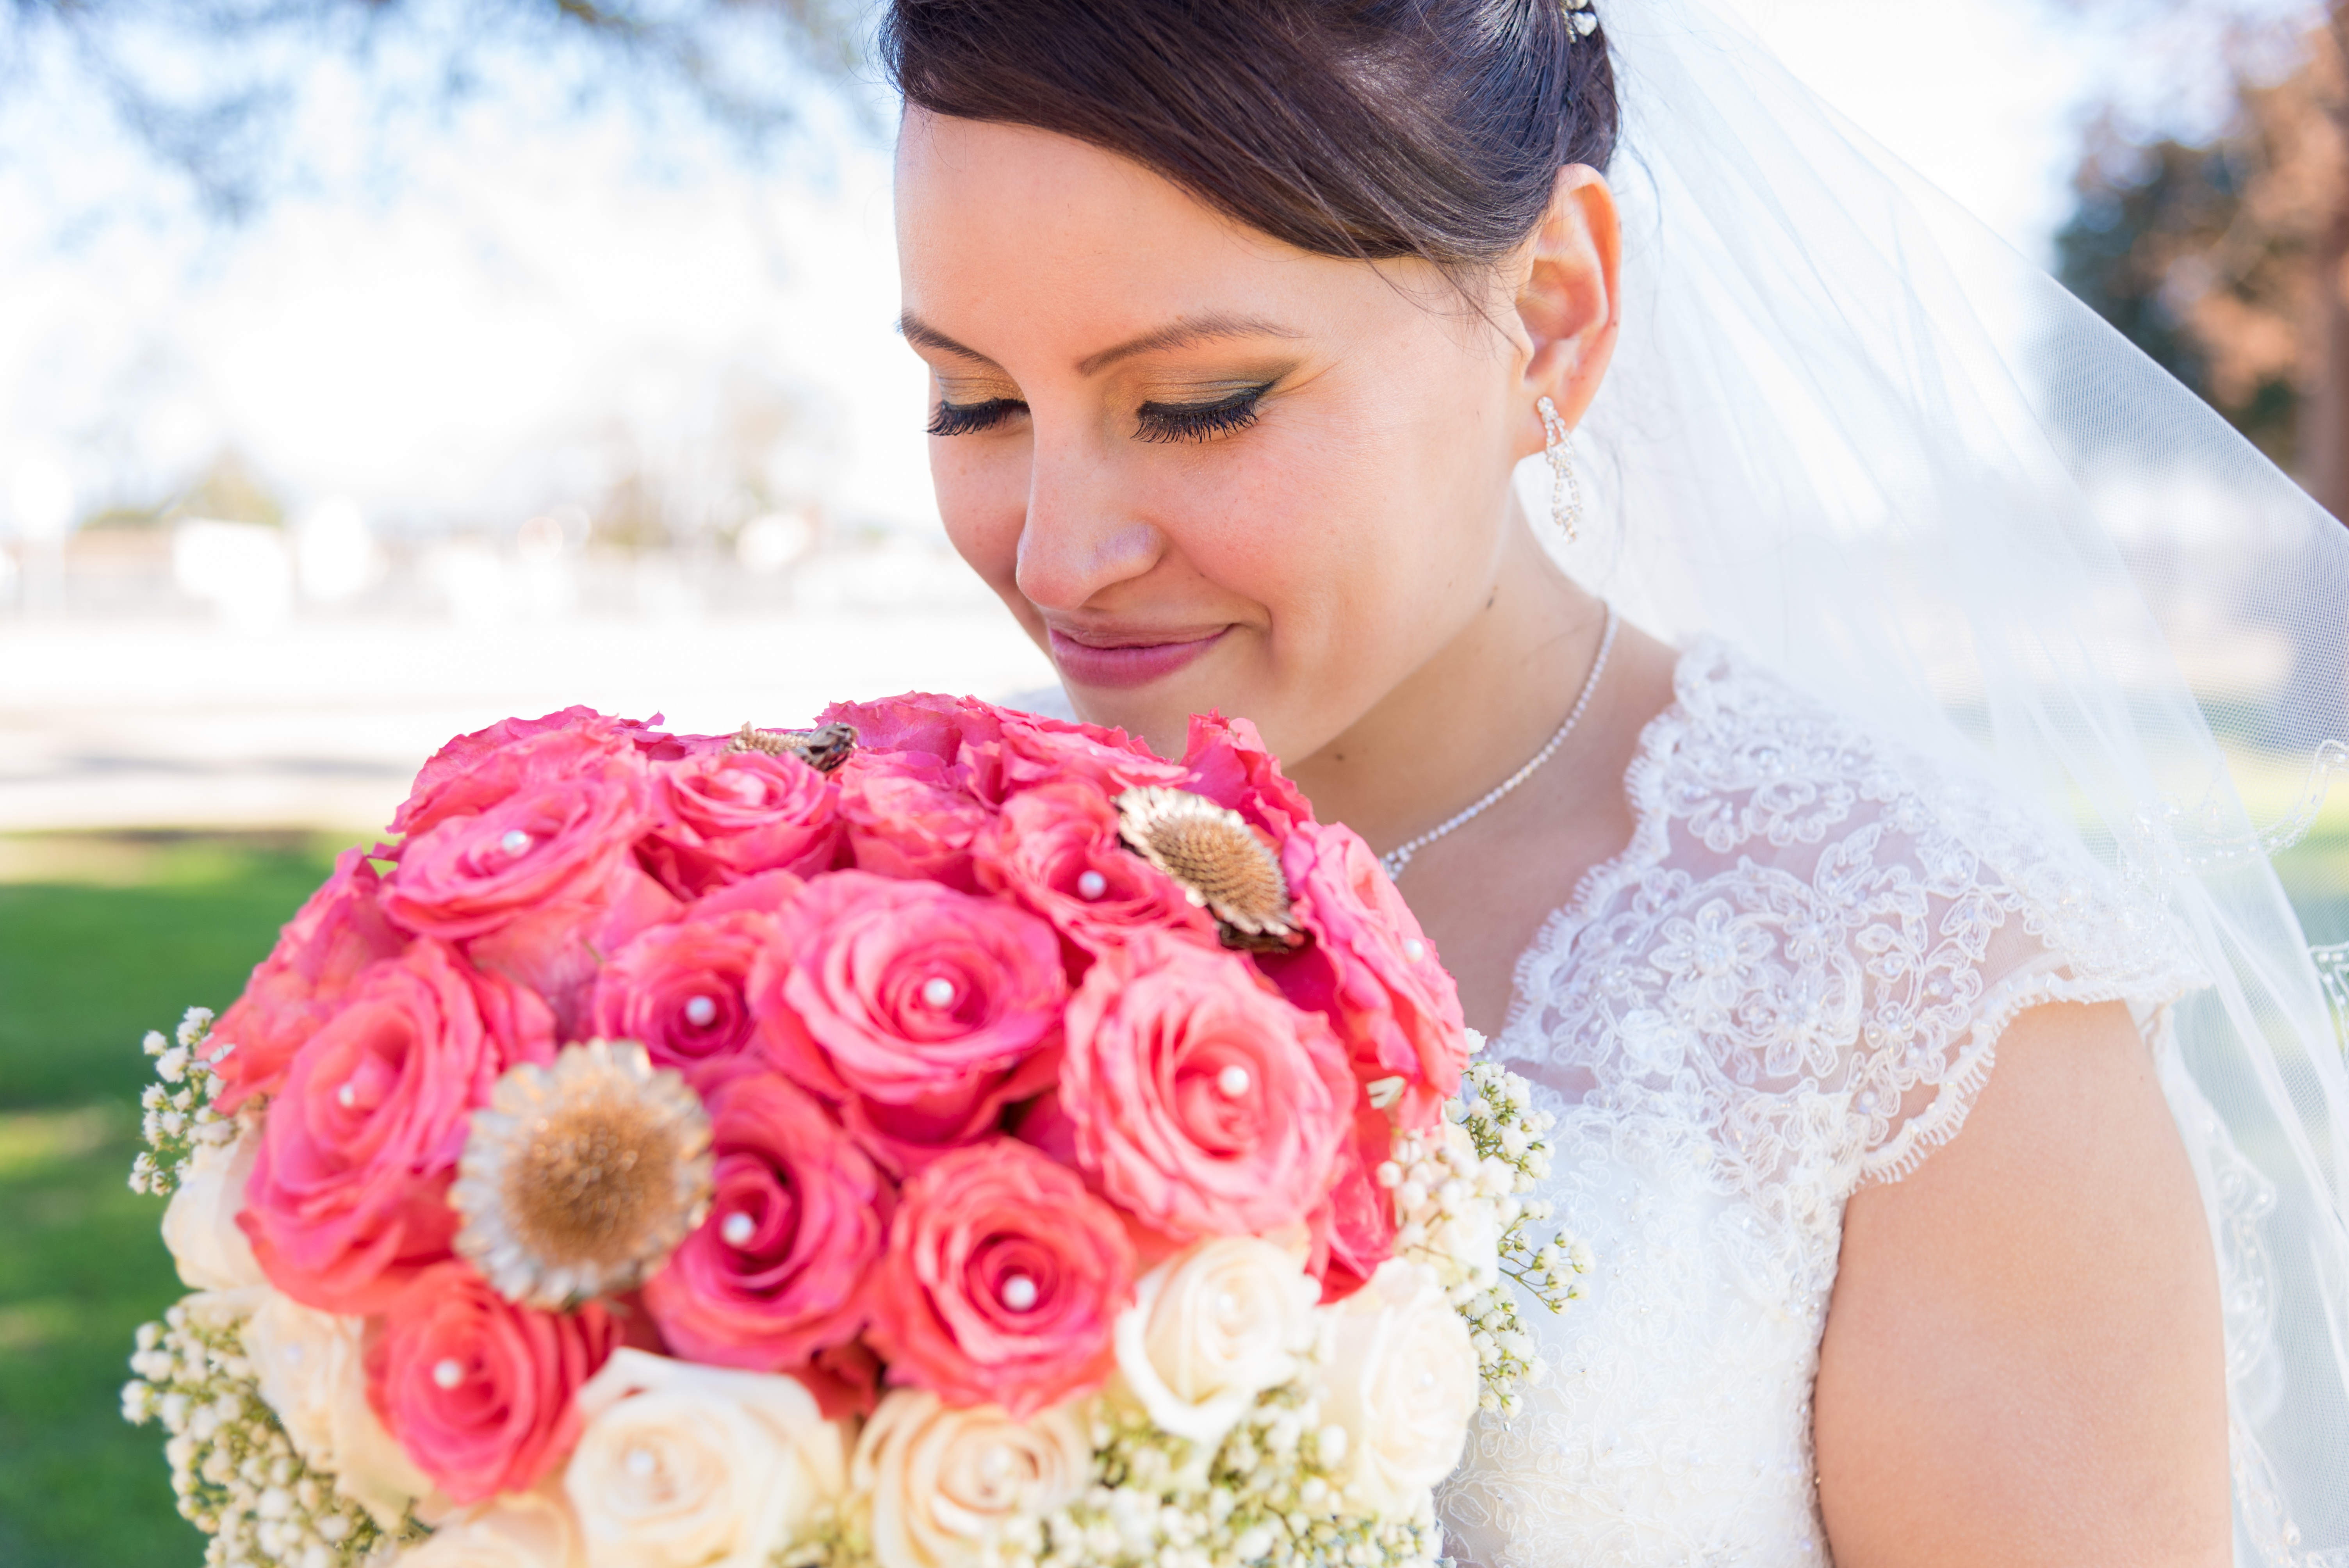 Бесплатное фото Девушка в свадебном платье с большим букетом розовых роз